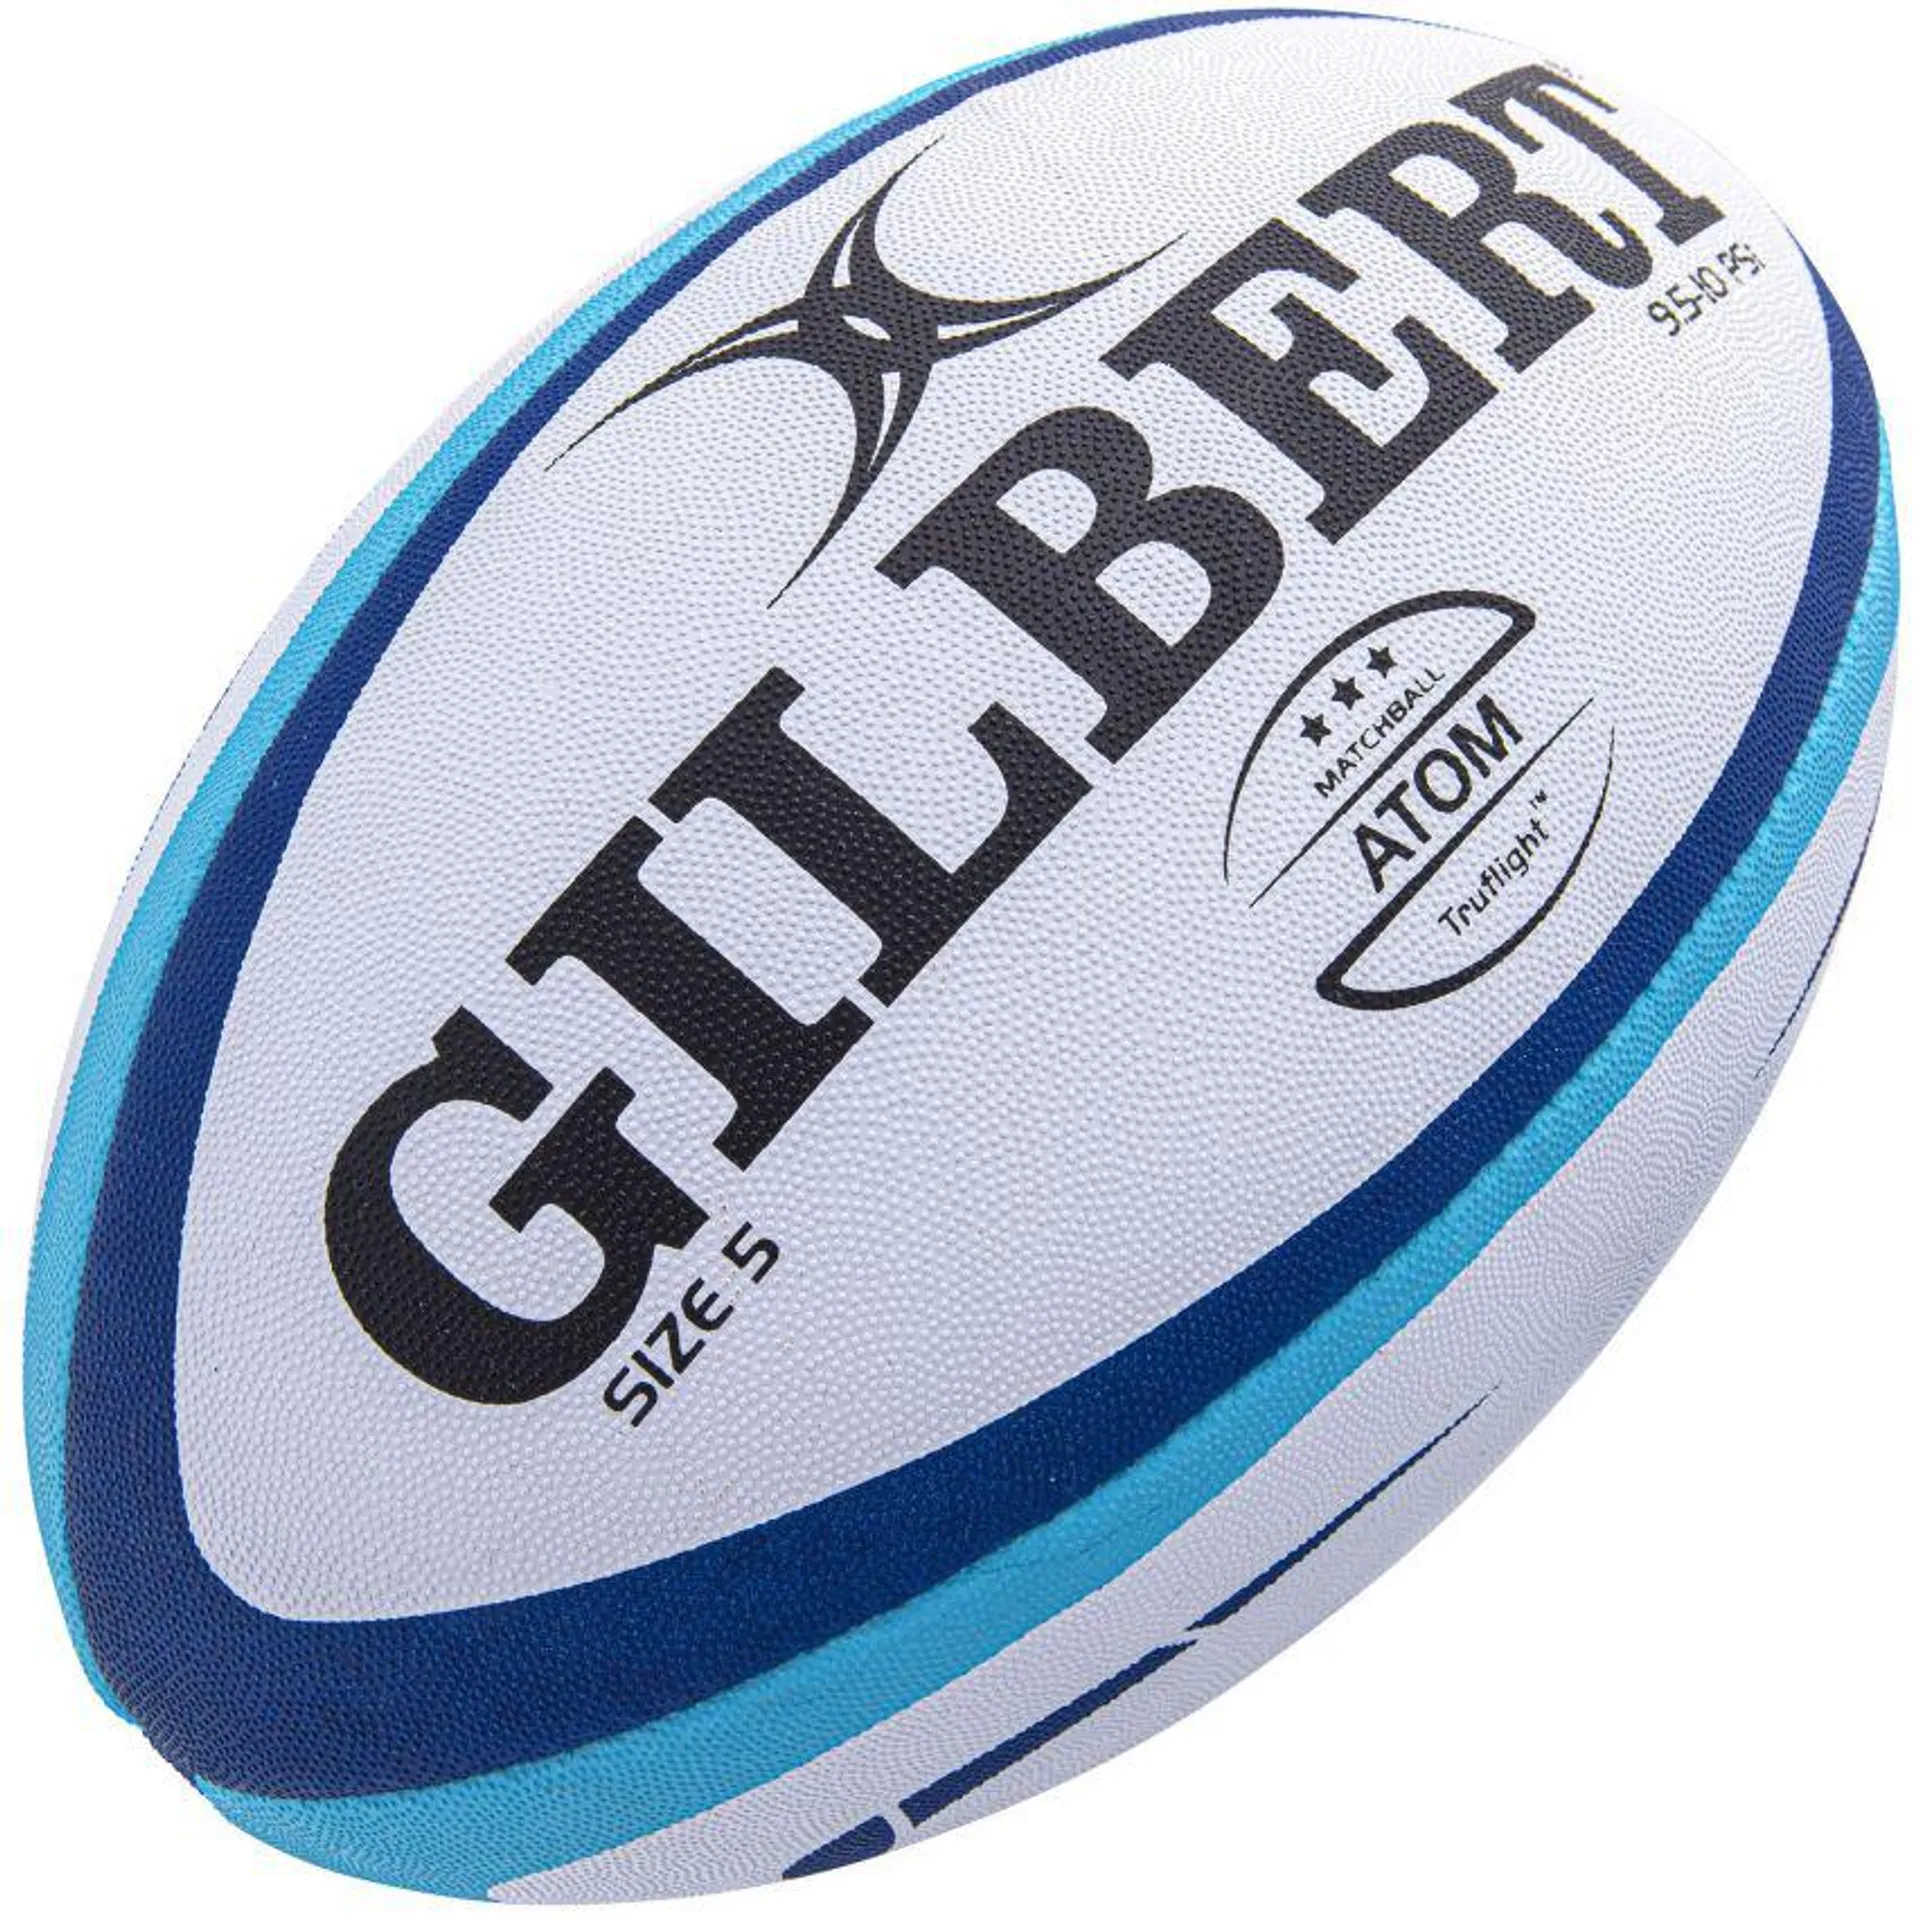 Ballon Rugby Entraînement Atom Bleu Taille 5 - Gilbert